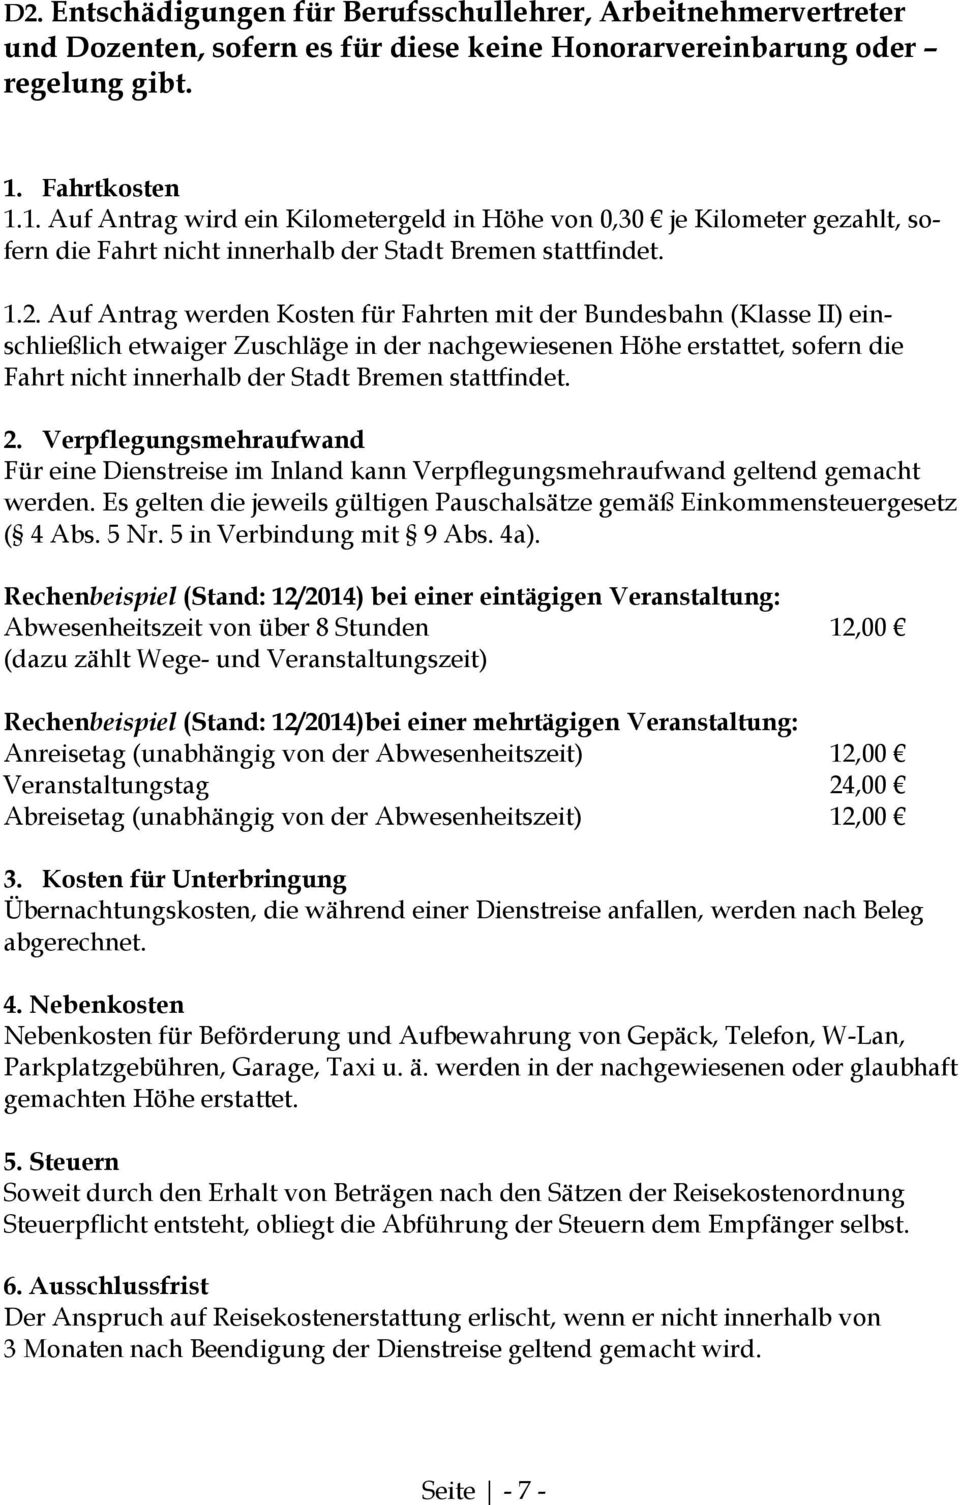 Auf Antrag werden Kosten für Fahrten mit der Bundesbahn (Klasse II) einschließlich etwaiger Zuschläge in der nachgewiesenen Höhe erstattet, sofern die Fahrt nicht innerhalb der Stadt Bremen